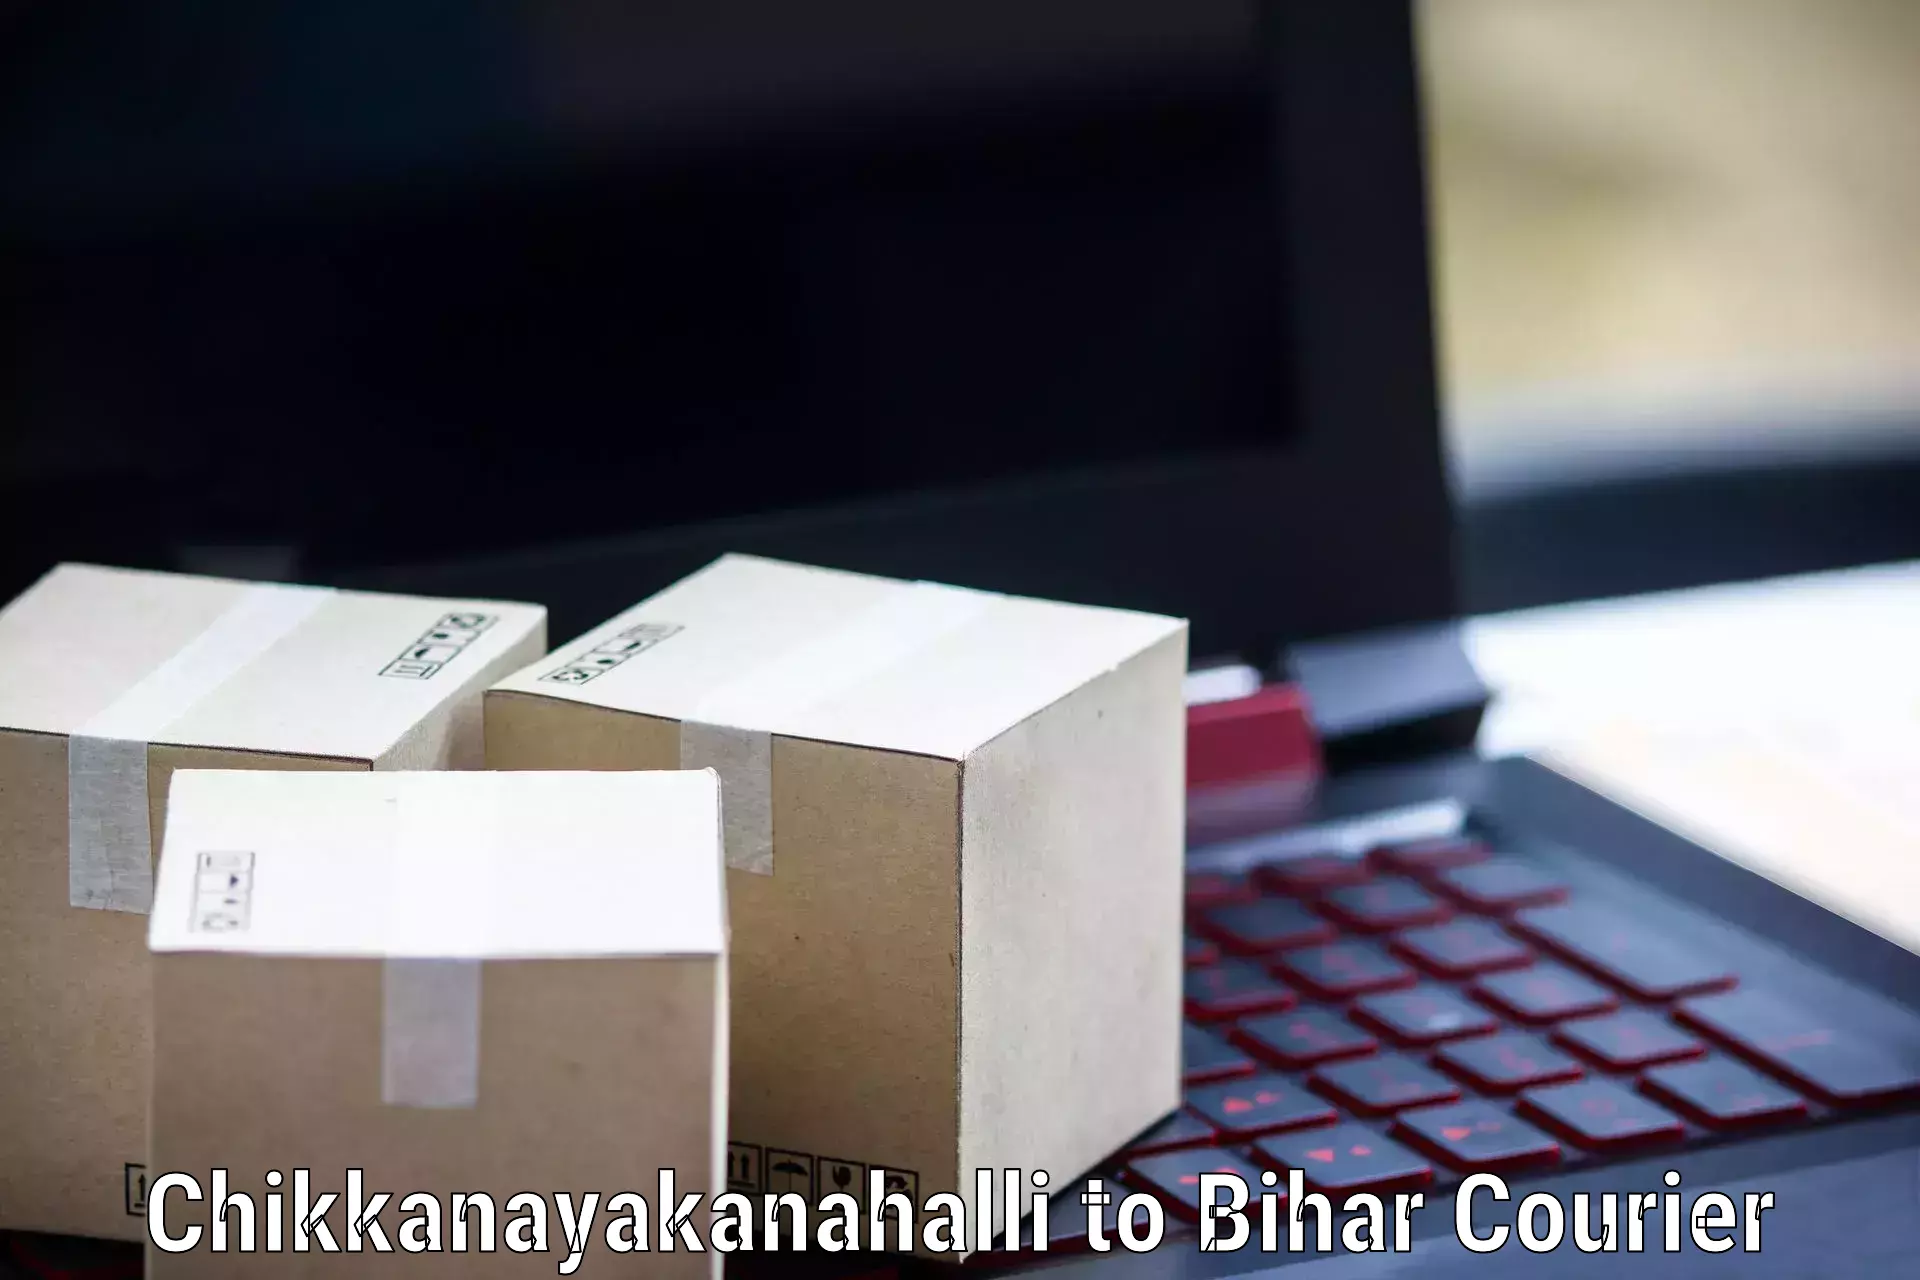 High-performance logistics Chikkanayakanahalli to Marhowrah